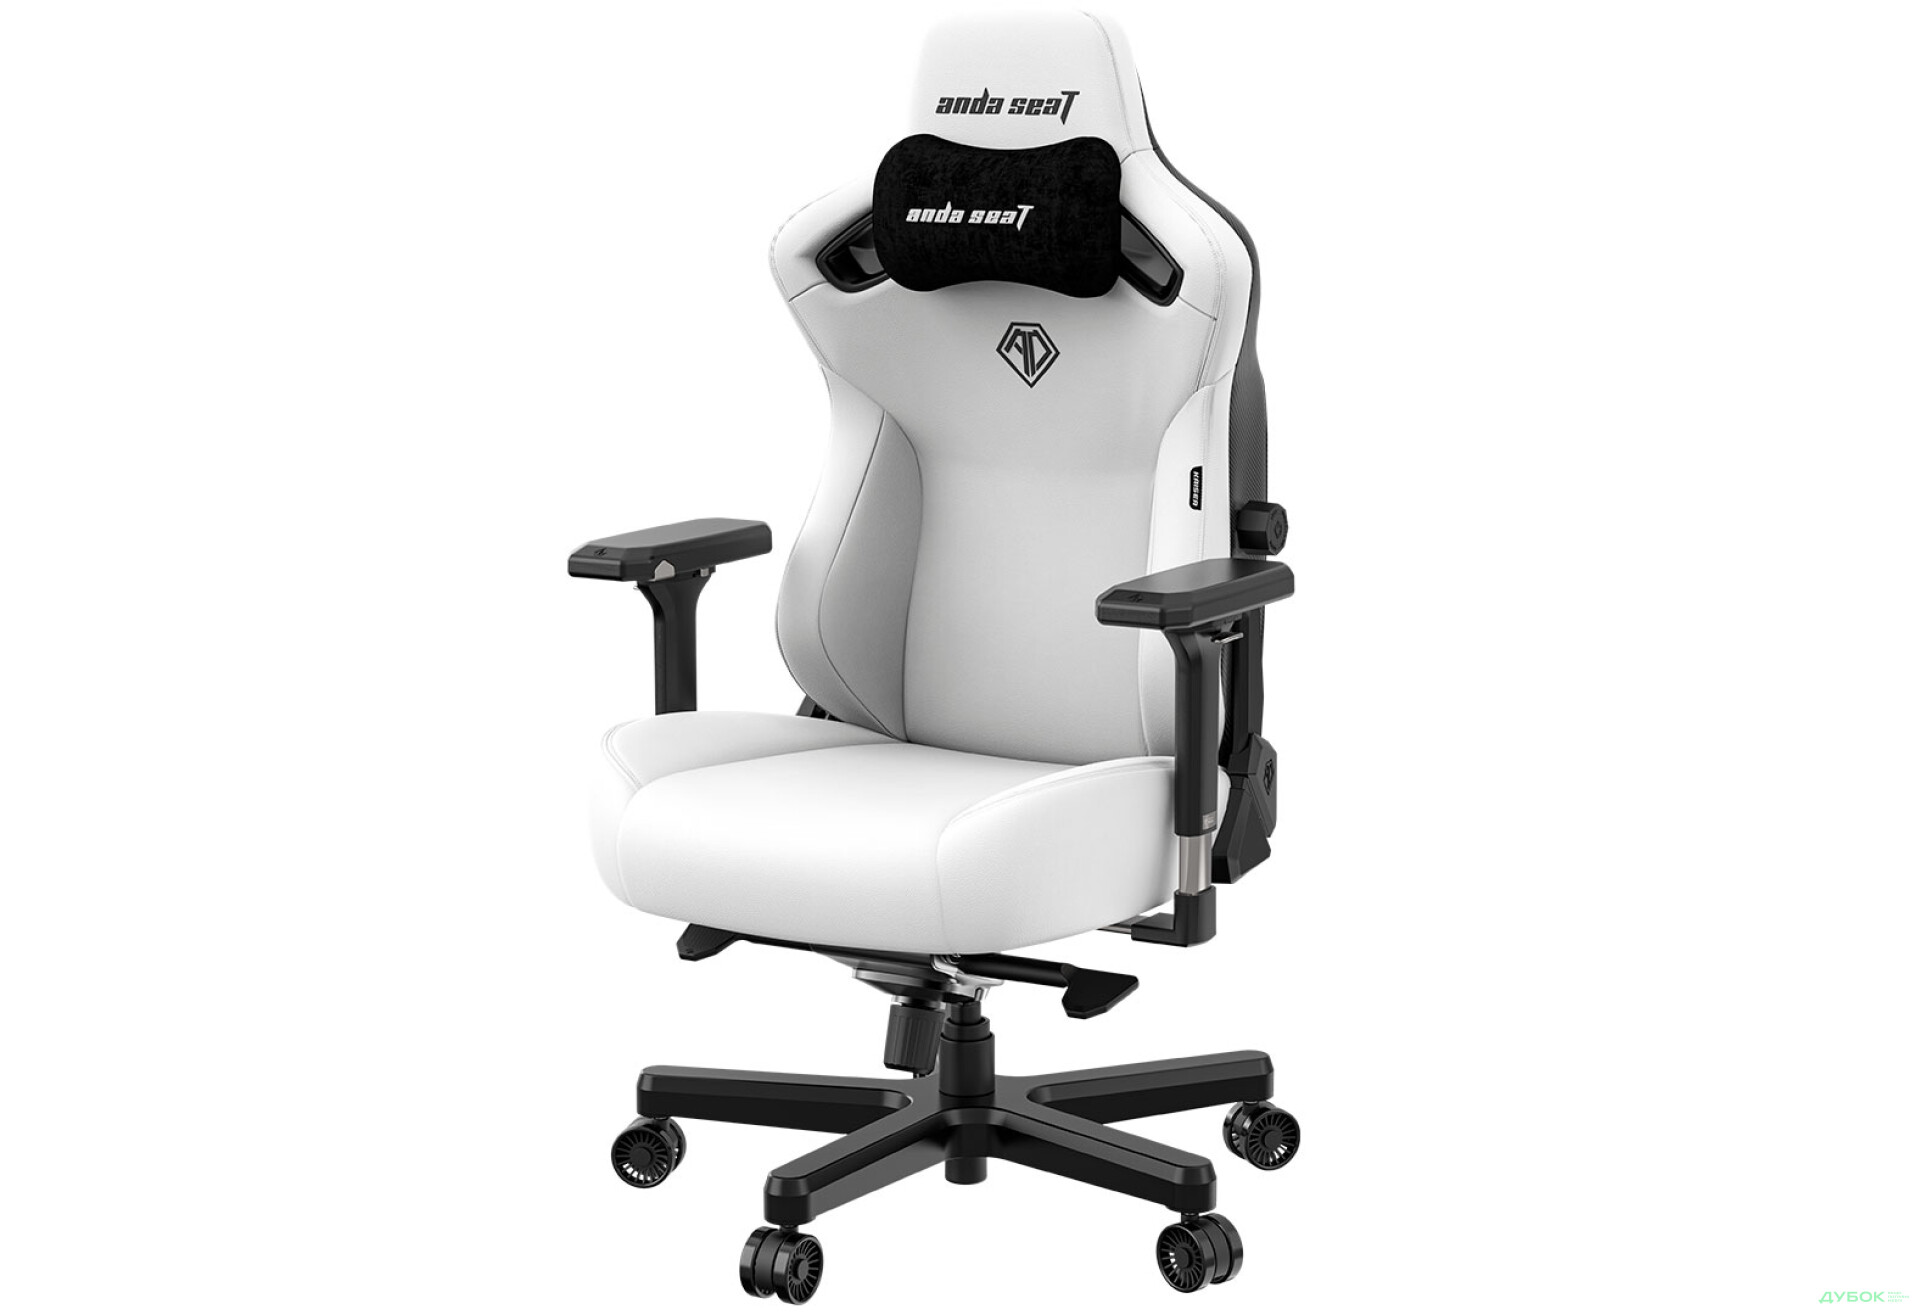 Фото 4 - Компьютерное кресло Anda Seat Kaiser 3 72x57x136 см игровое, белое